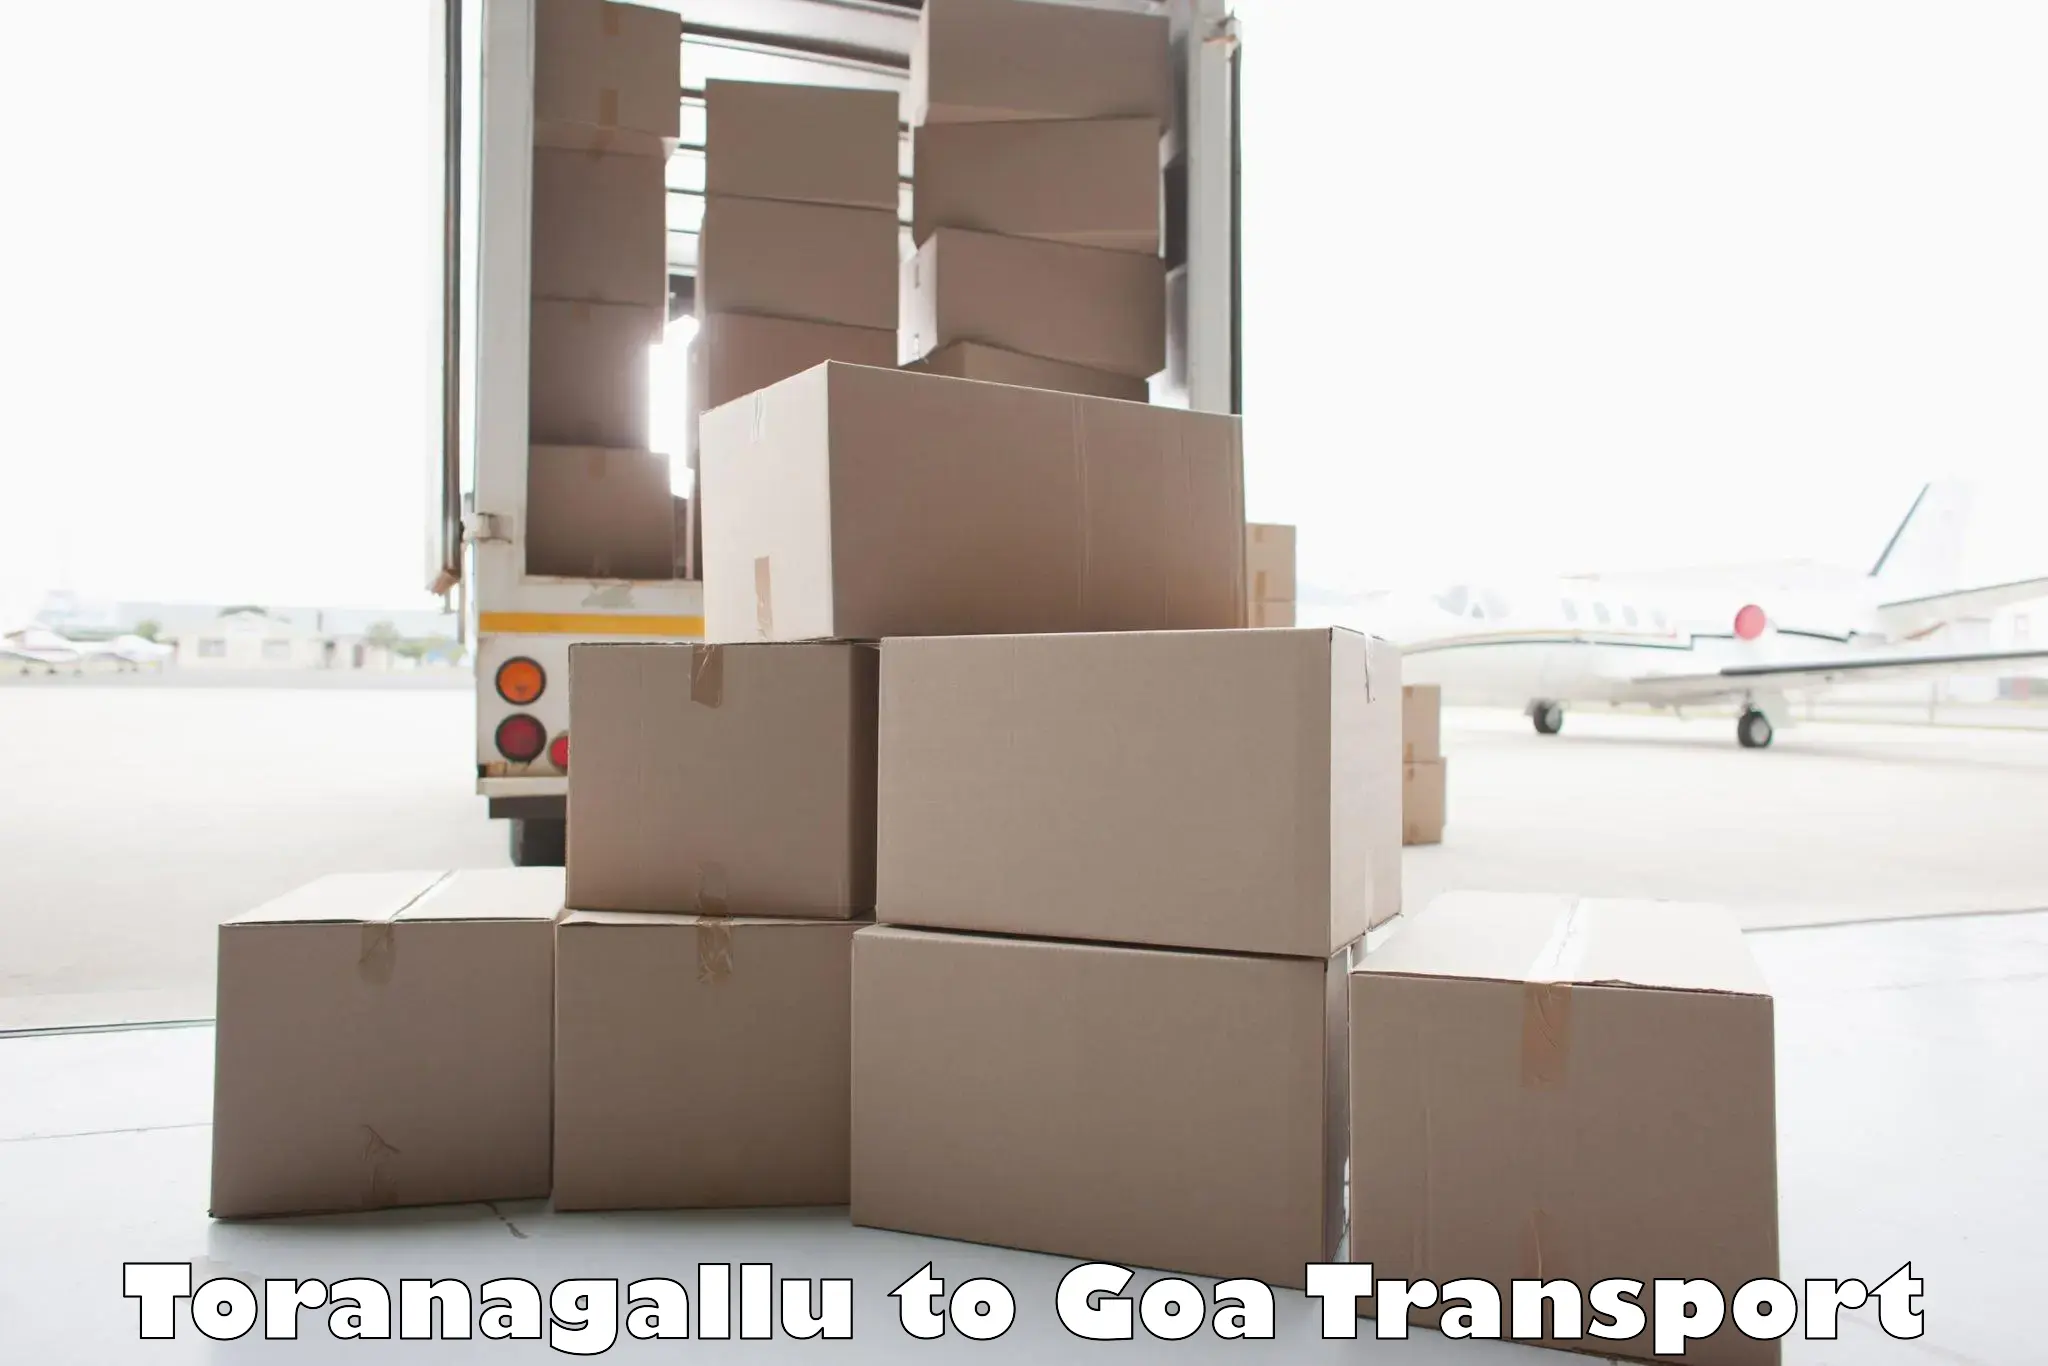 Furniture transport service Toranagallu to Vasco da Gama